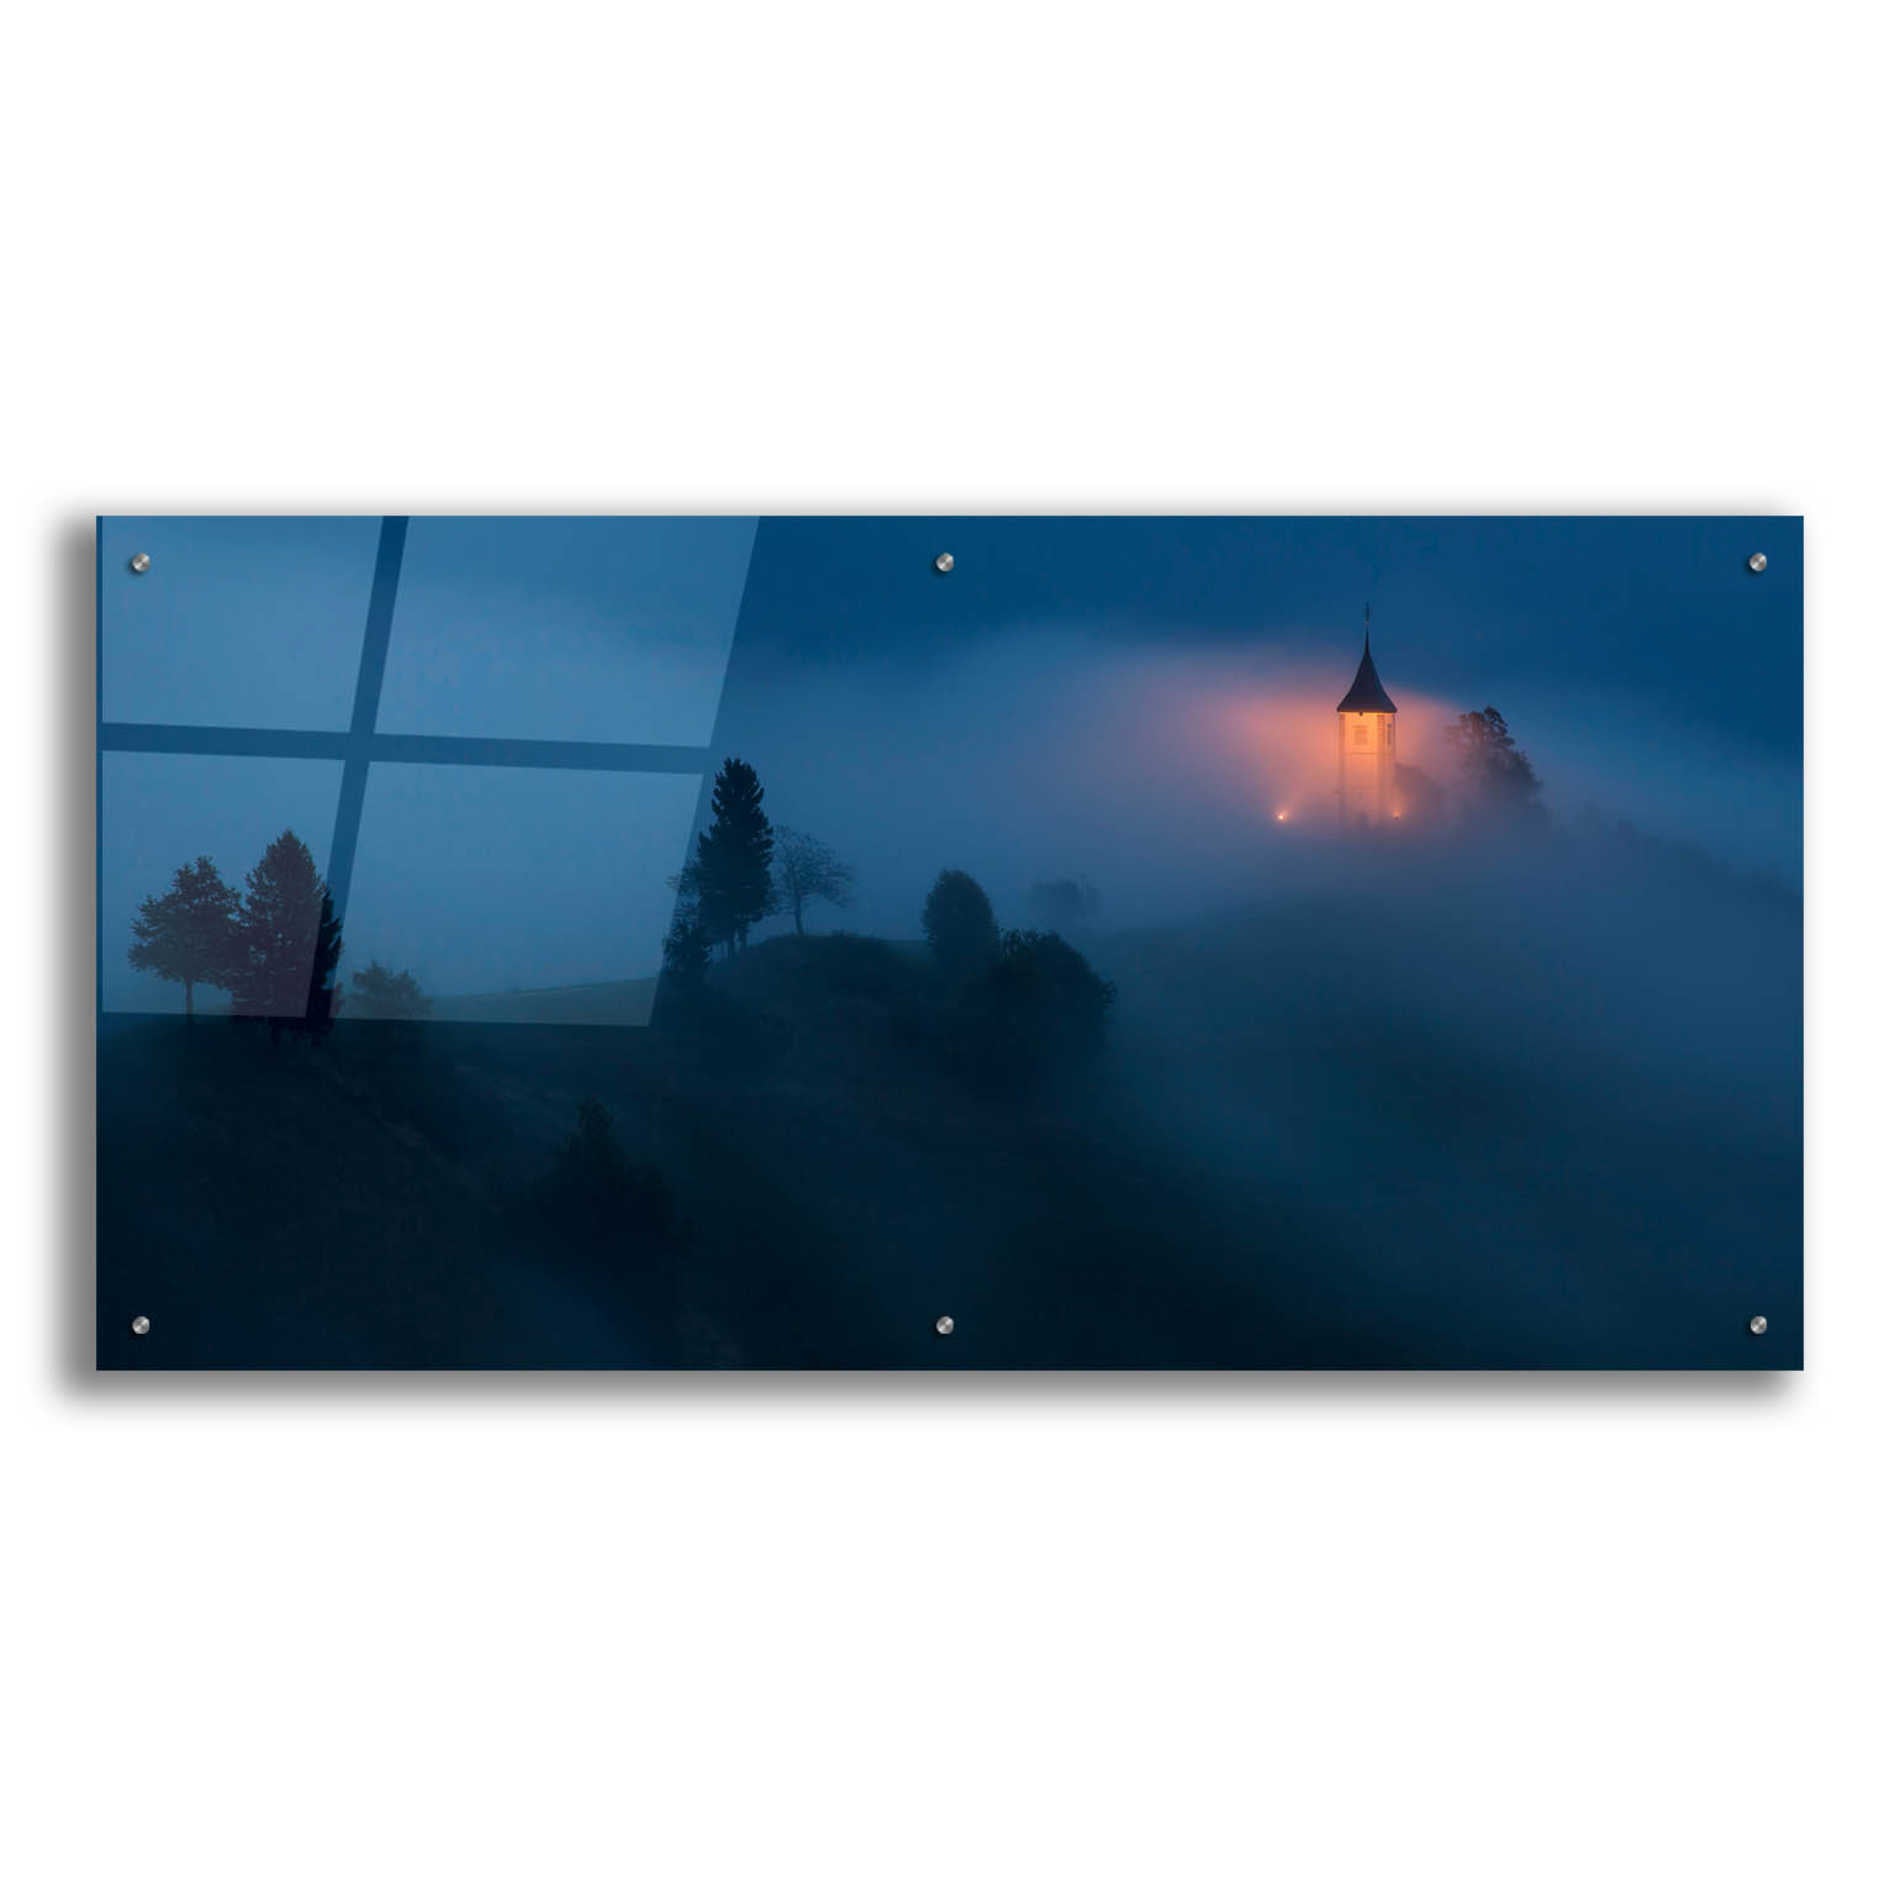 Epic Art 'Fog Rolls In' by Larry Malvin, Acrylic Glass Wall Art,48x24